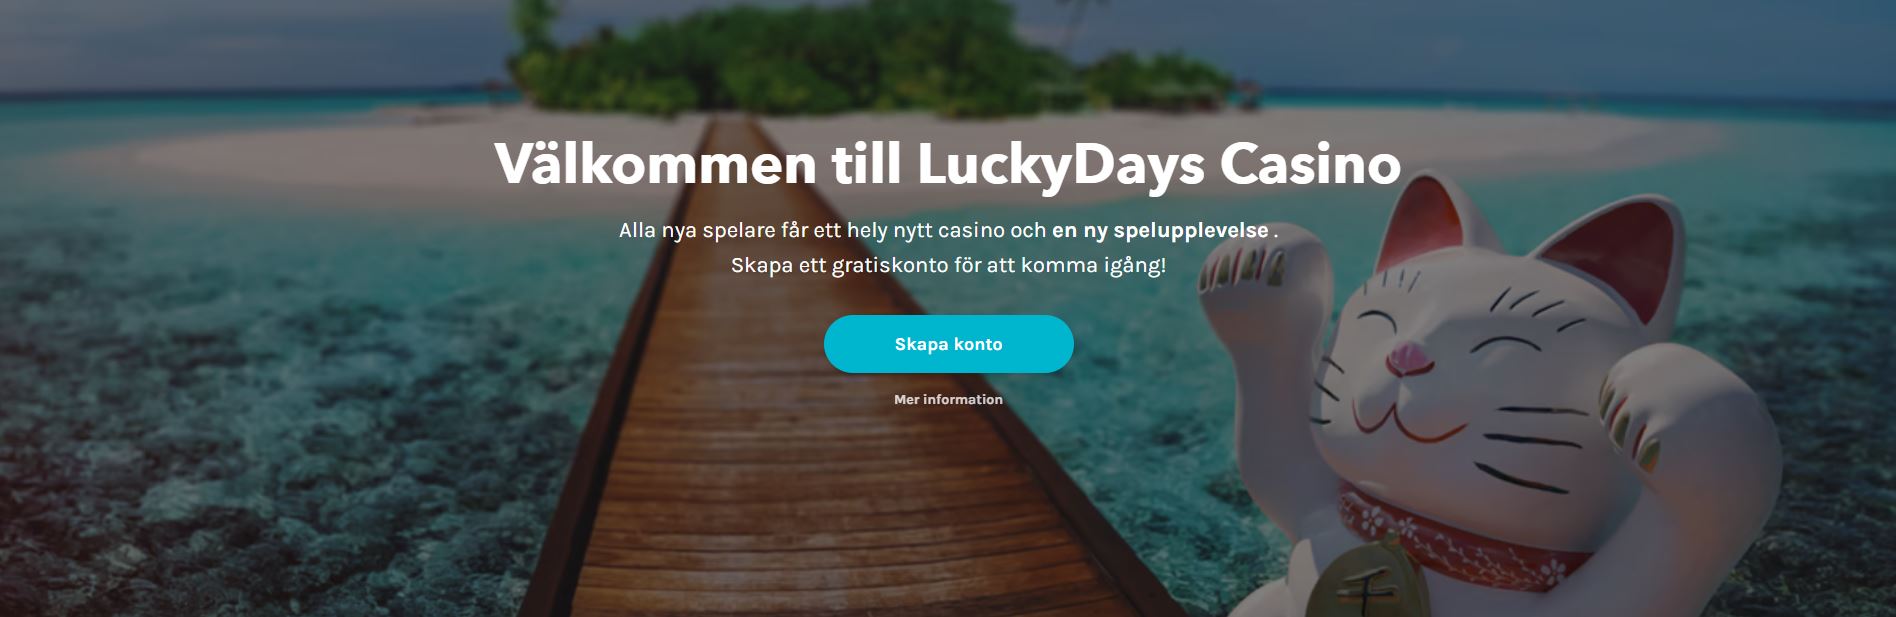 Bild på hemsidan på LuckyDays med katten och text om casinot